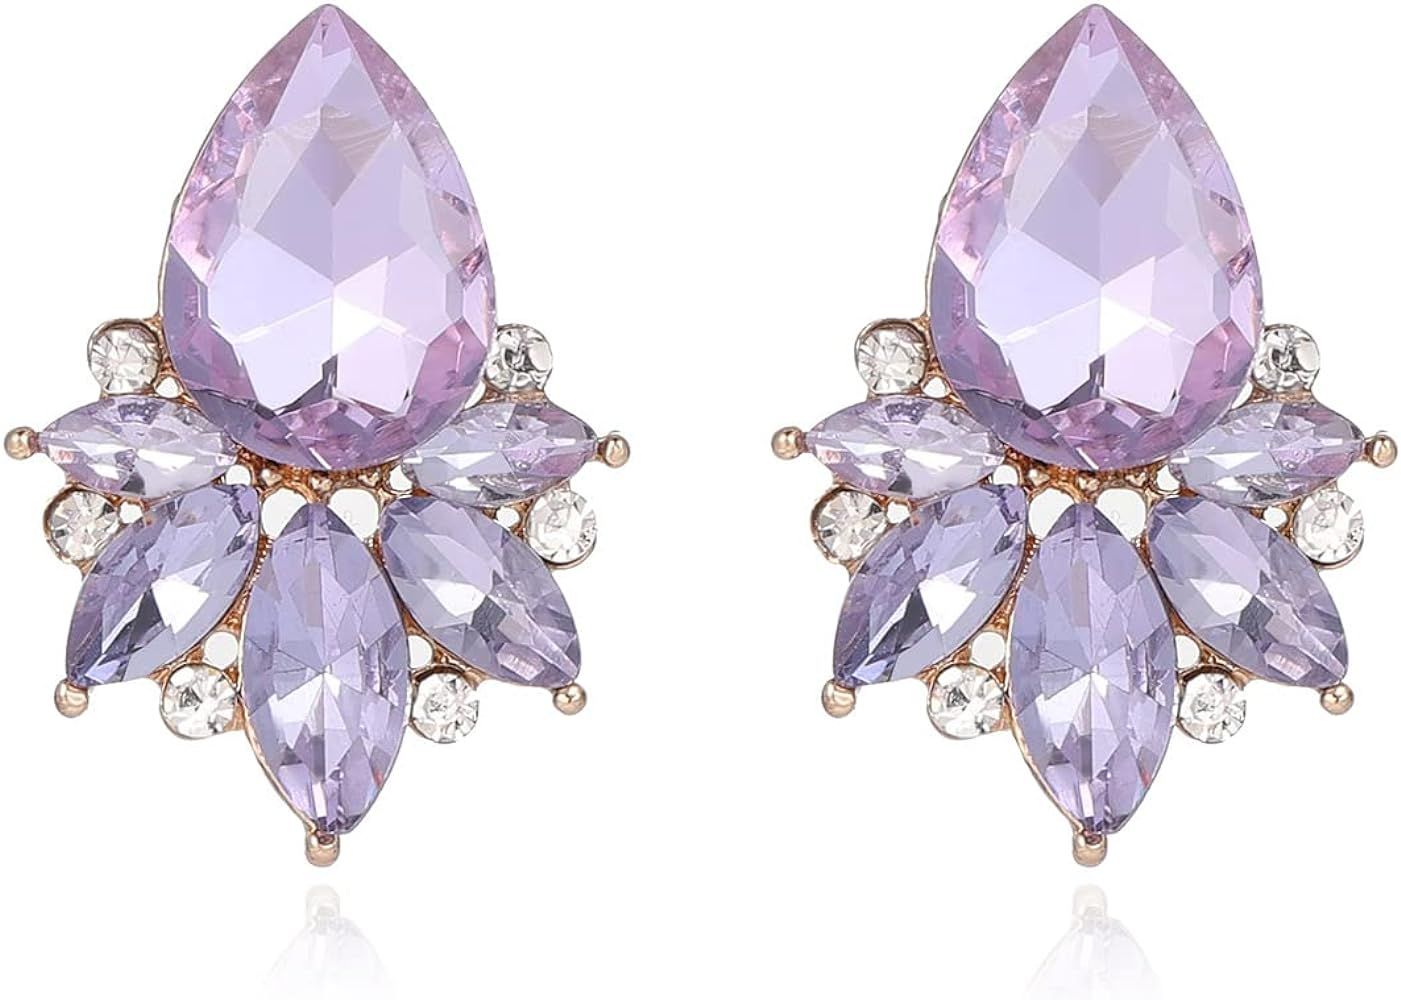 Vintage Rhinestone Earrings Fancy Crystal Cluster Drop Earrings Art Deco Earrings for Women Girls | Amazon (US)